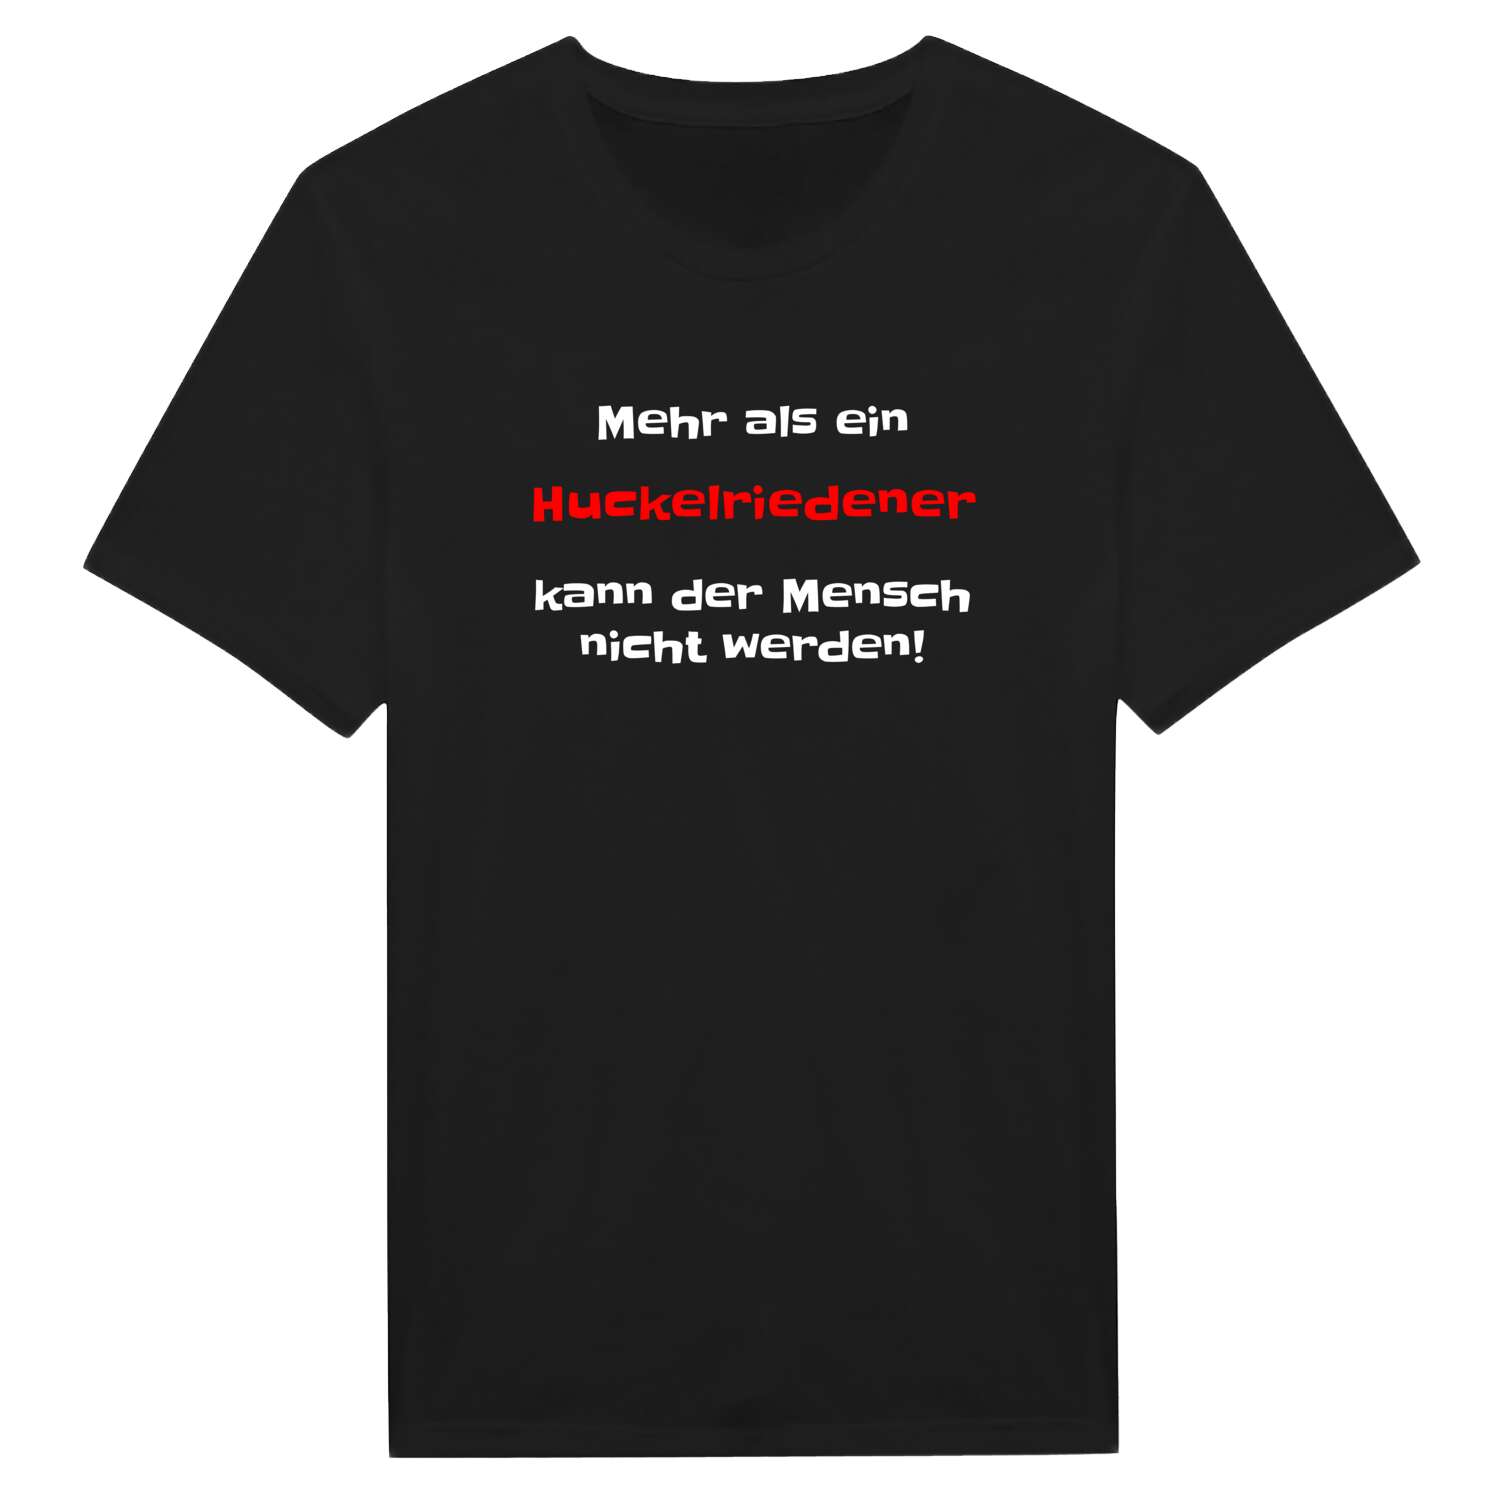 Huckelrieden T-Shirt »Mehr als ein«